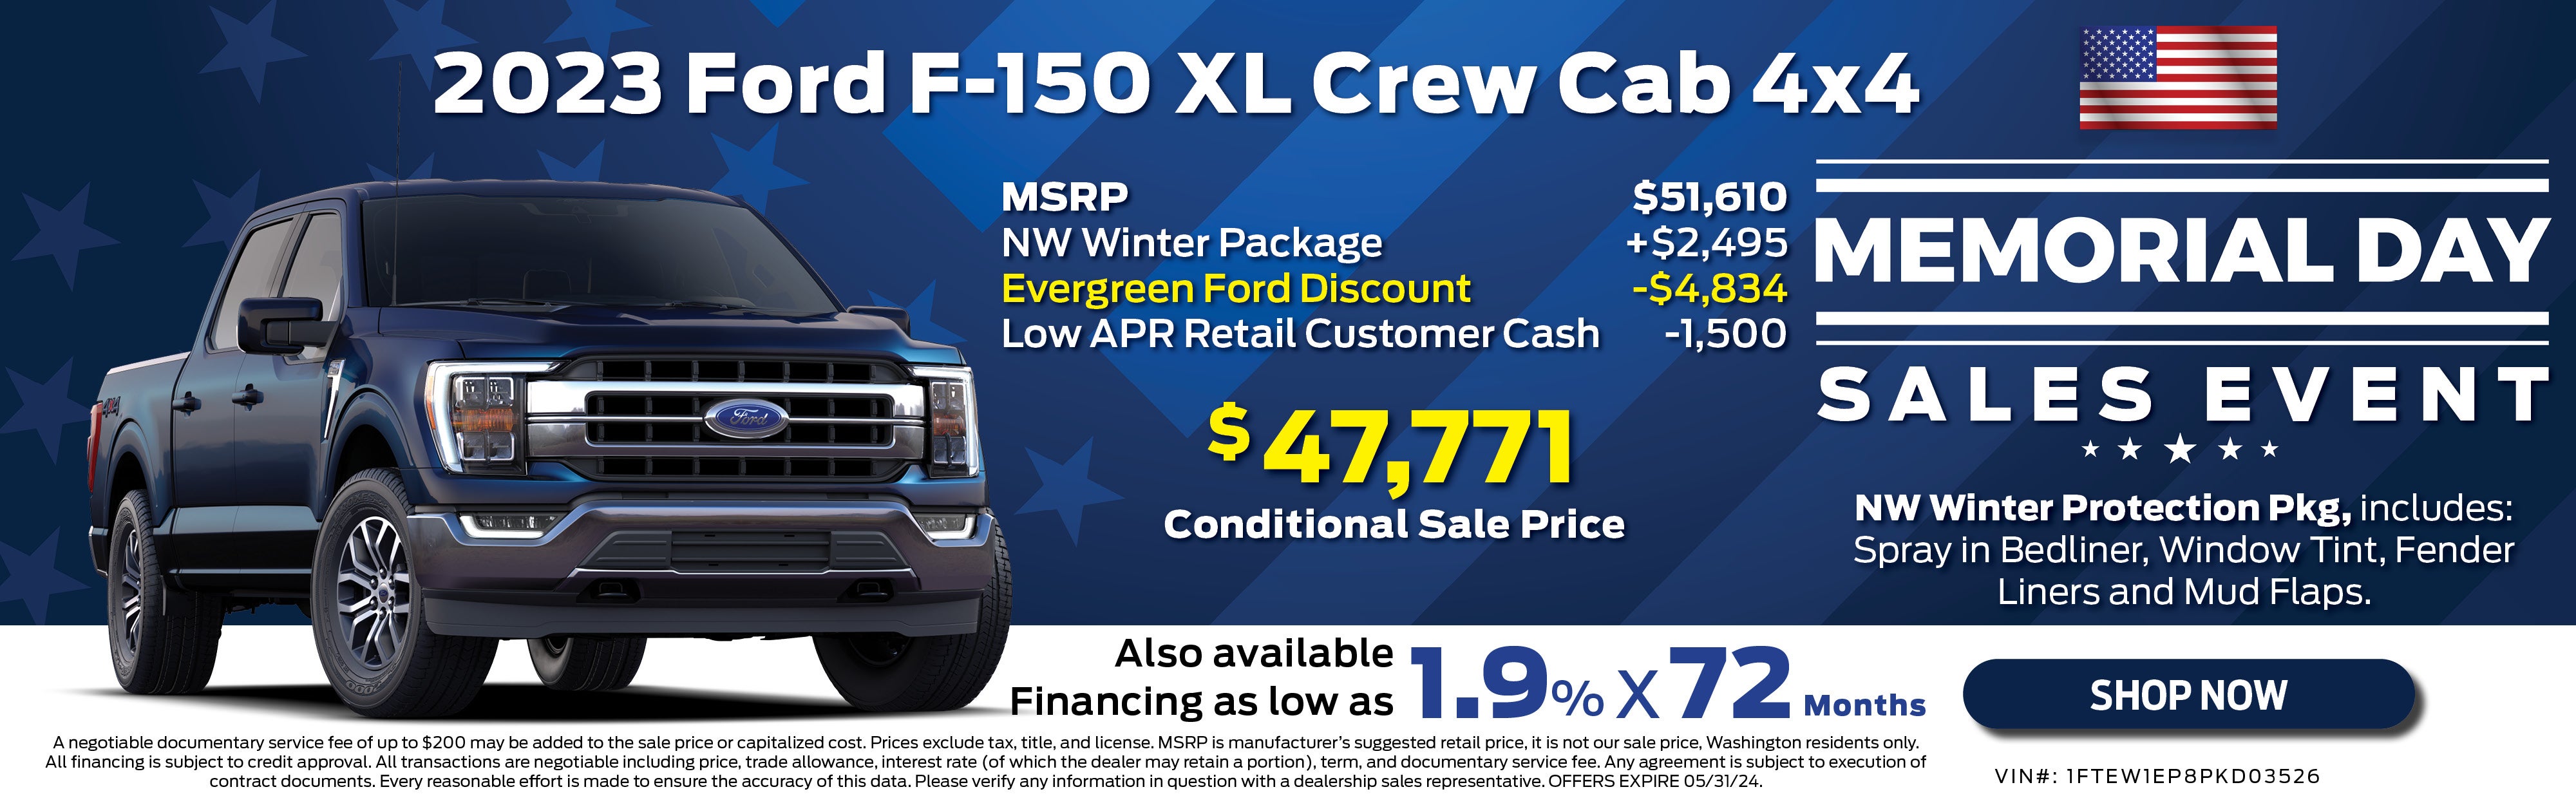 2023 F-150 XL Crew Cab 4x4